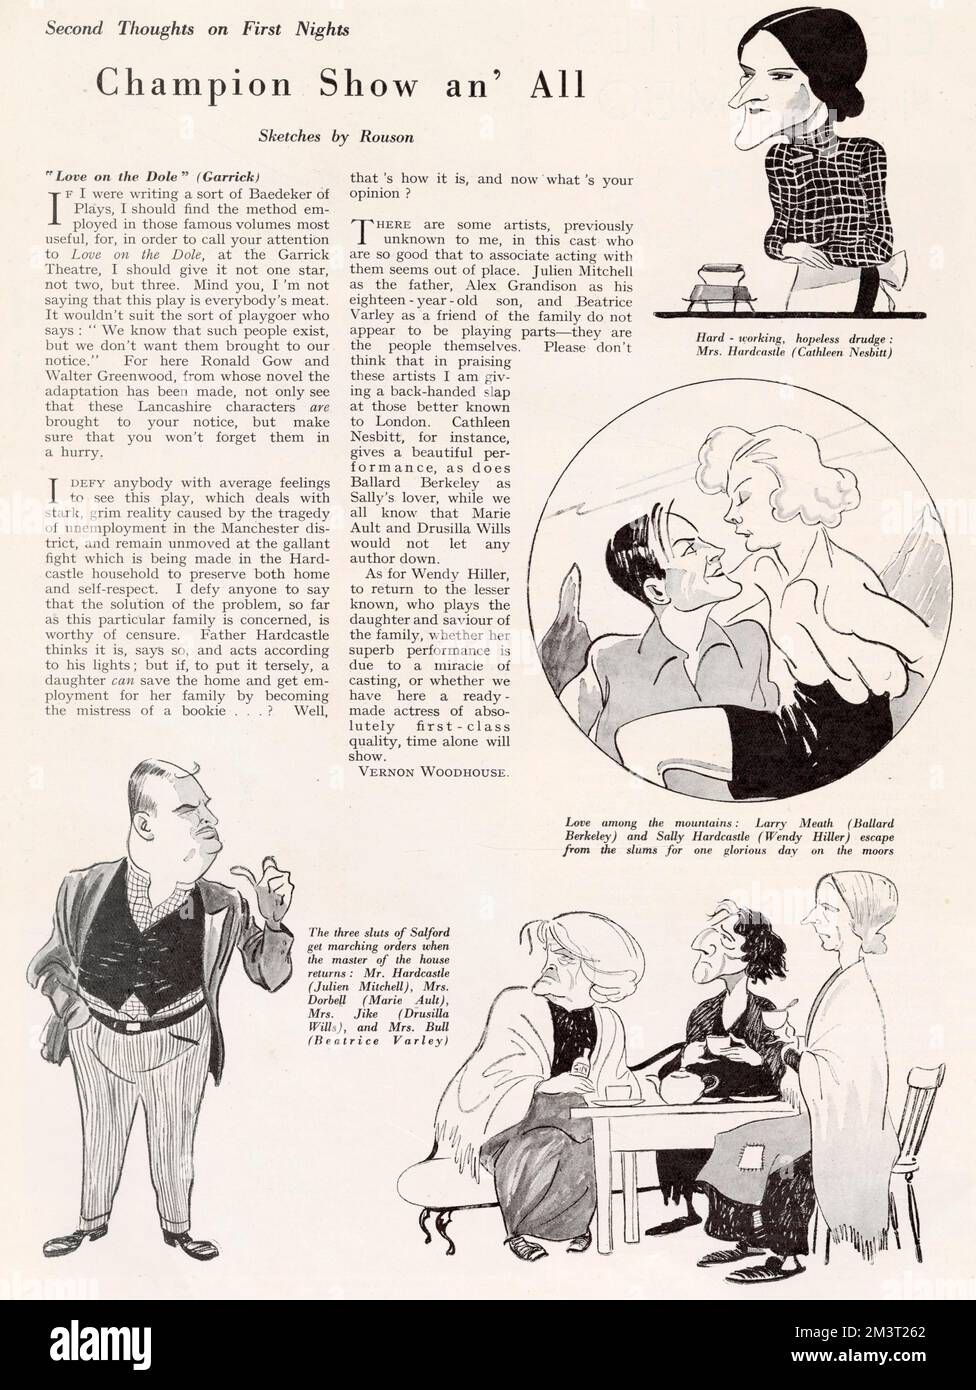 Critique de « Love on the Dole » de Walter Greenwood au Garrick Theatre dans le magazine The Bystander, avec caricatures des personnages principaux de Rouson. Banque D'Images